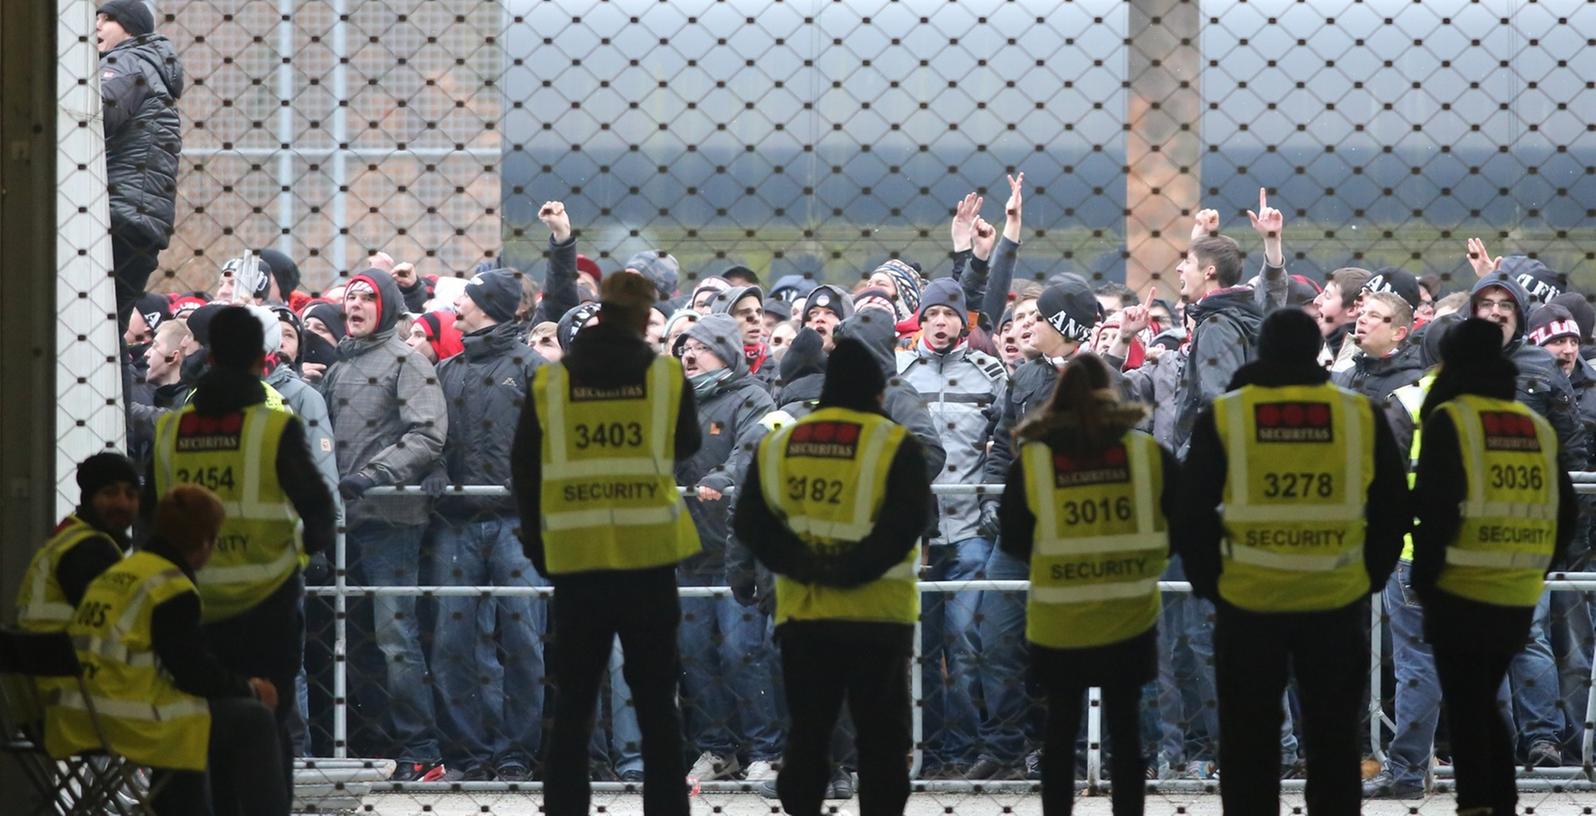 Vor dem Stadion gerieten während der Bundesligapartie zwischen Eintracht Frankfurt und dem 1. FC Nürnberg am 9. Februar 2013 Clubfans mit der Polizei aneinander. Mittlerweile sind alle Verfahren abgeschlossen.